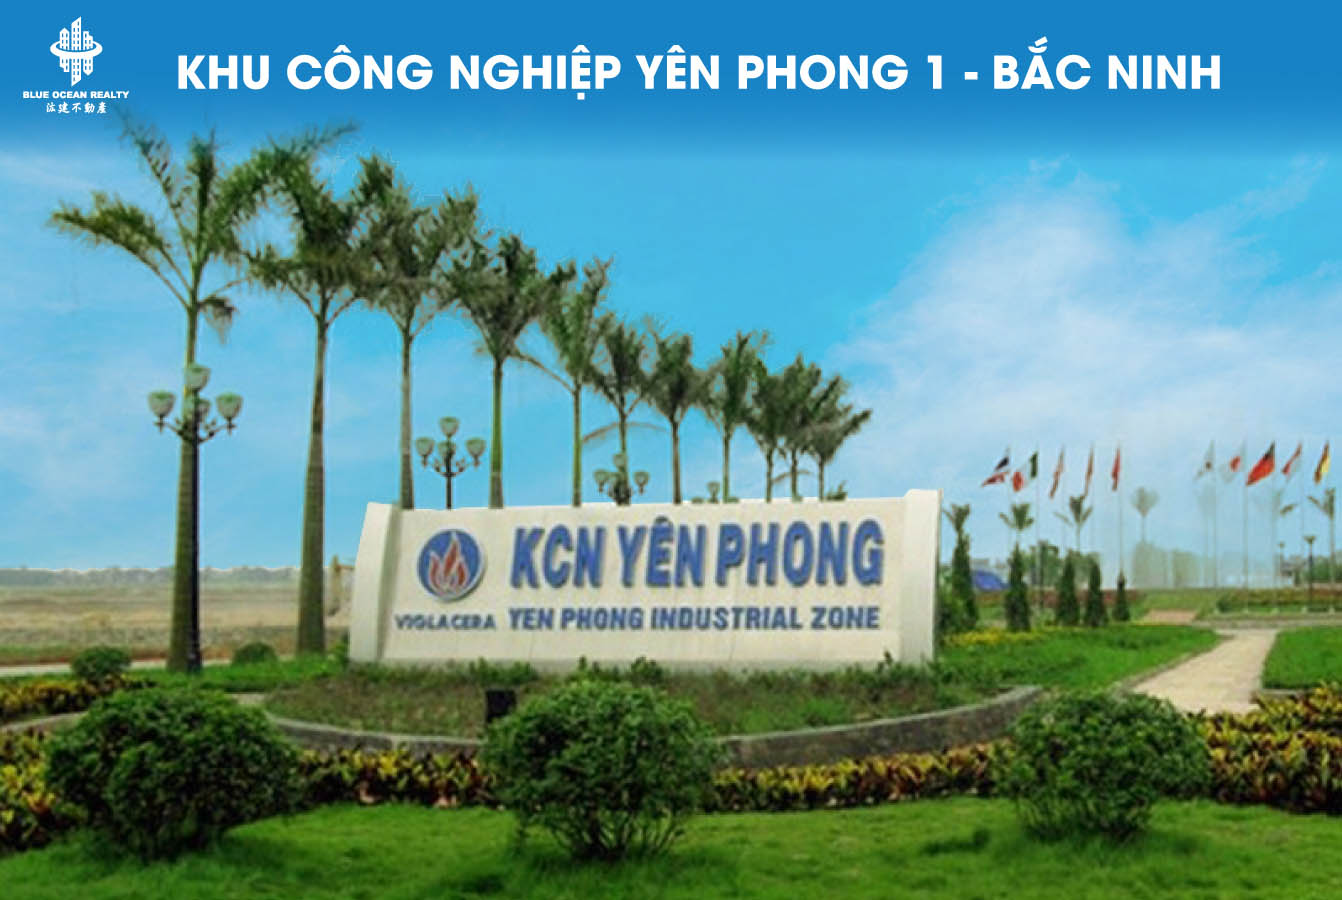 Khu công nghiệp Yên Phong 1 - Bắc Ninh